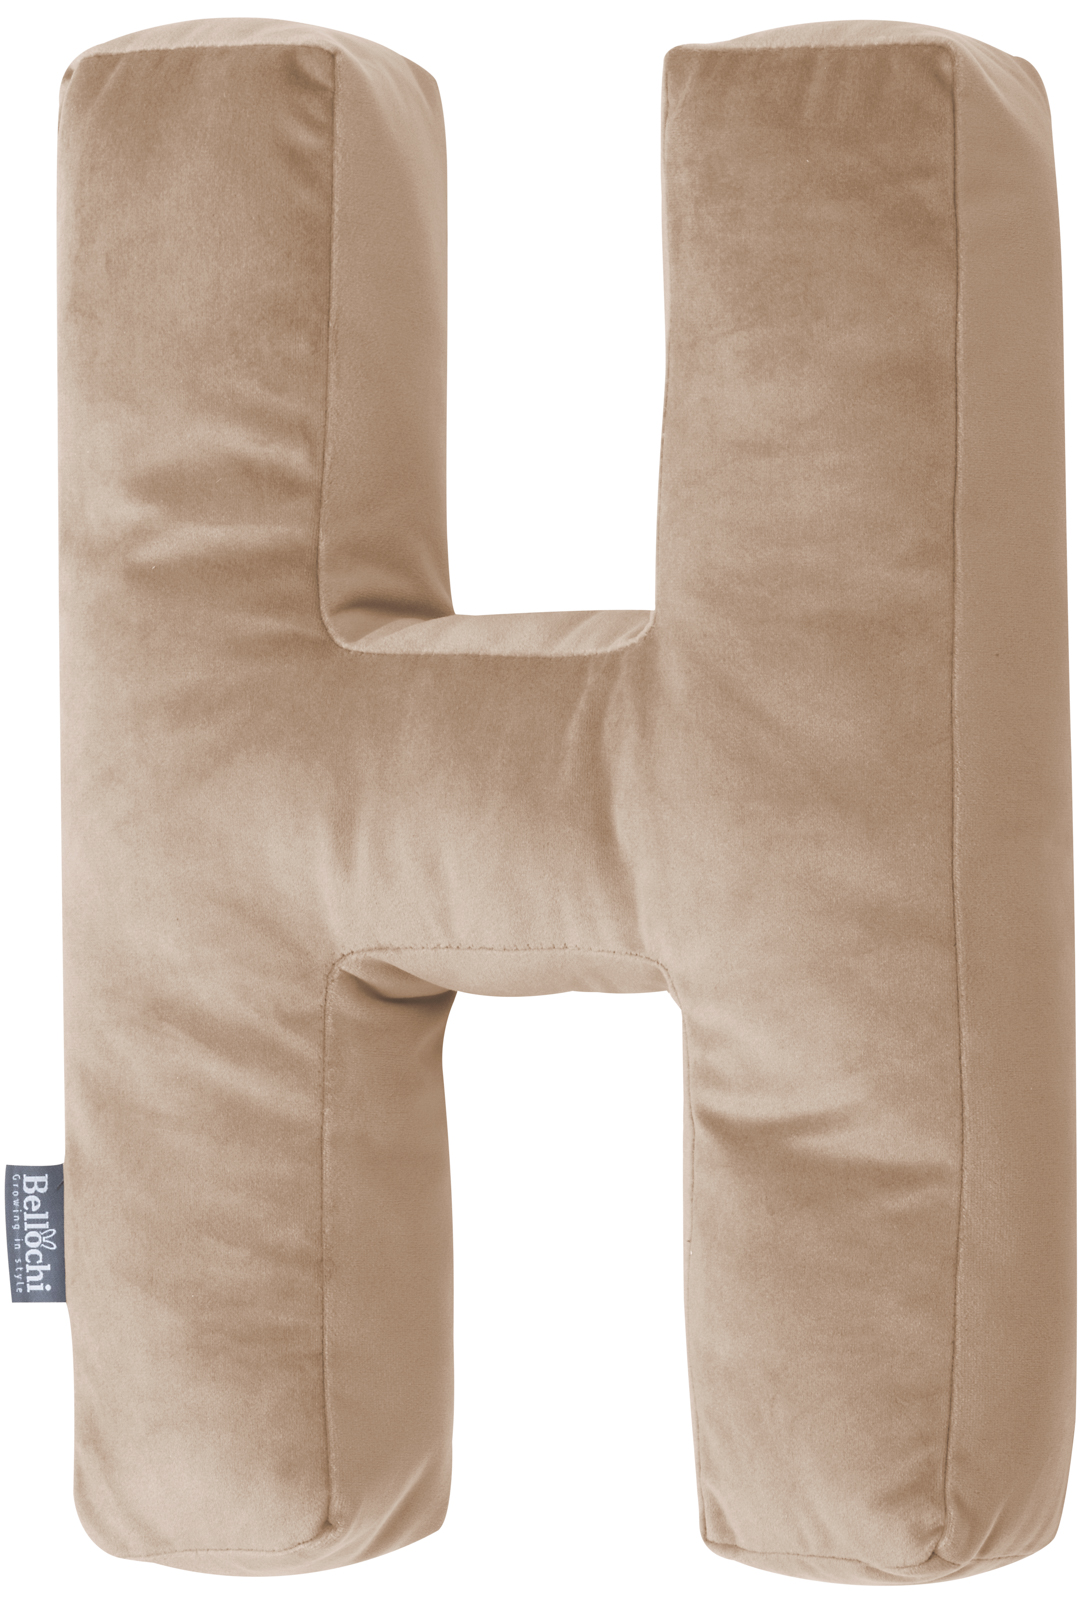 Decorative velvet letter pillow H shaped beige